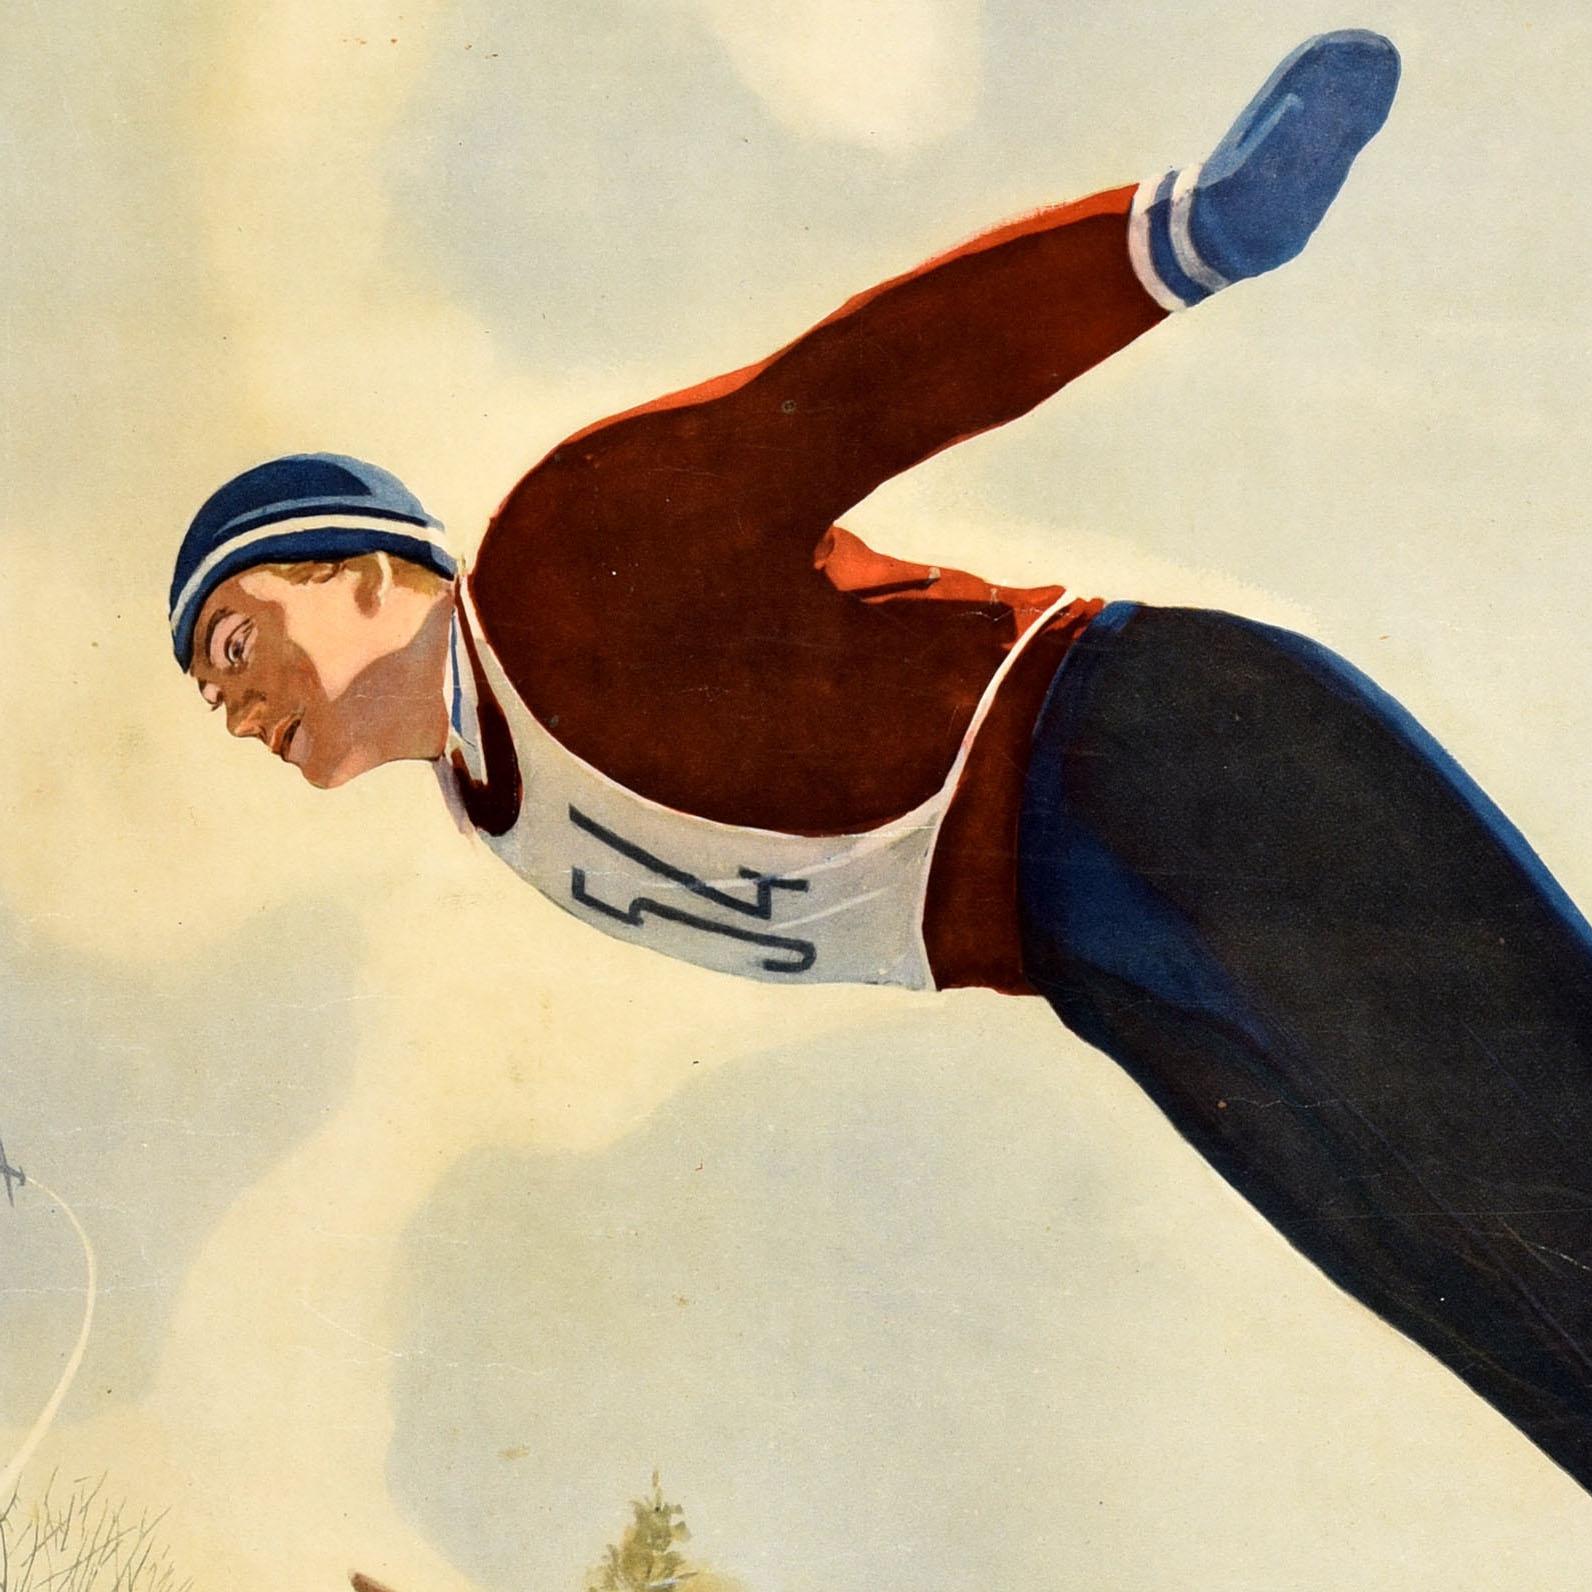 Affiche sportive soviétique originale et vintage - S'efforcer d'atteindre des compétences élevées en matière de ski / ? ??????? ? ? ? ?????? ? ????????? ? ? ????? ? ?????! Illustration dynamique d'un skieur portant un dossard numéro 54, penché en